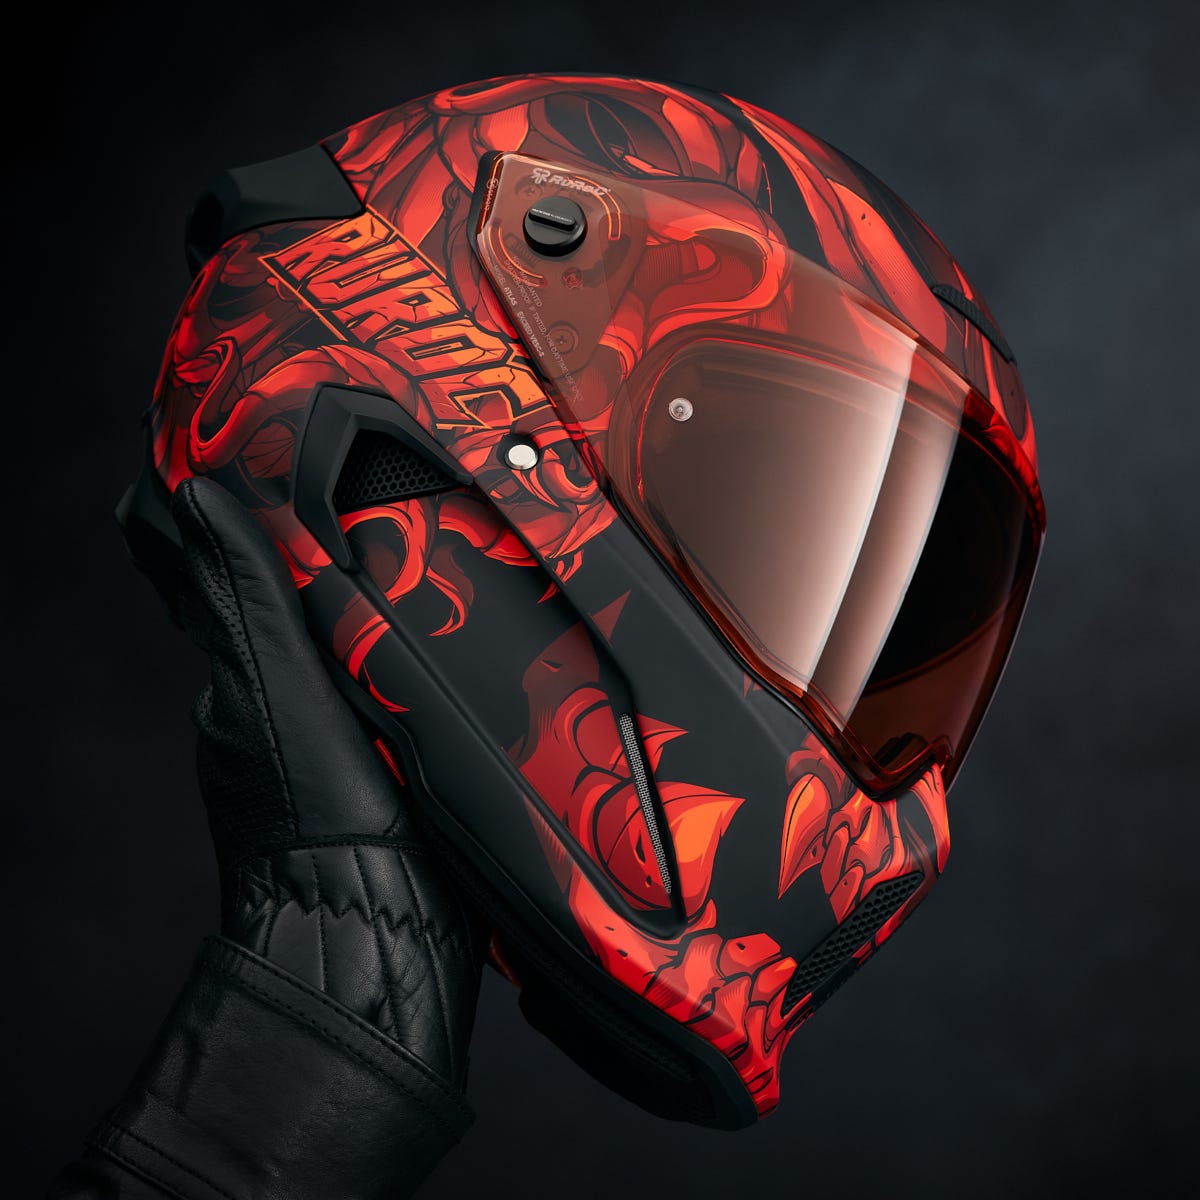 Atlas 3.0 Helmet - El Diablo - Blemished